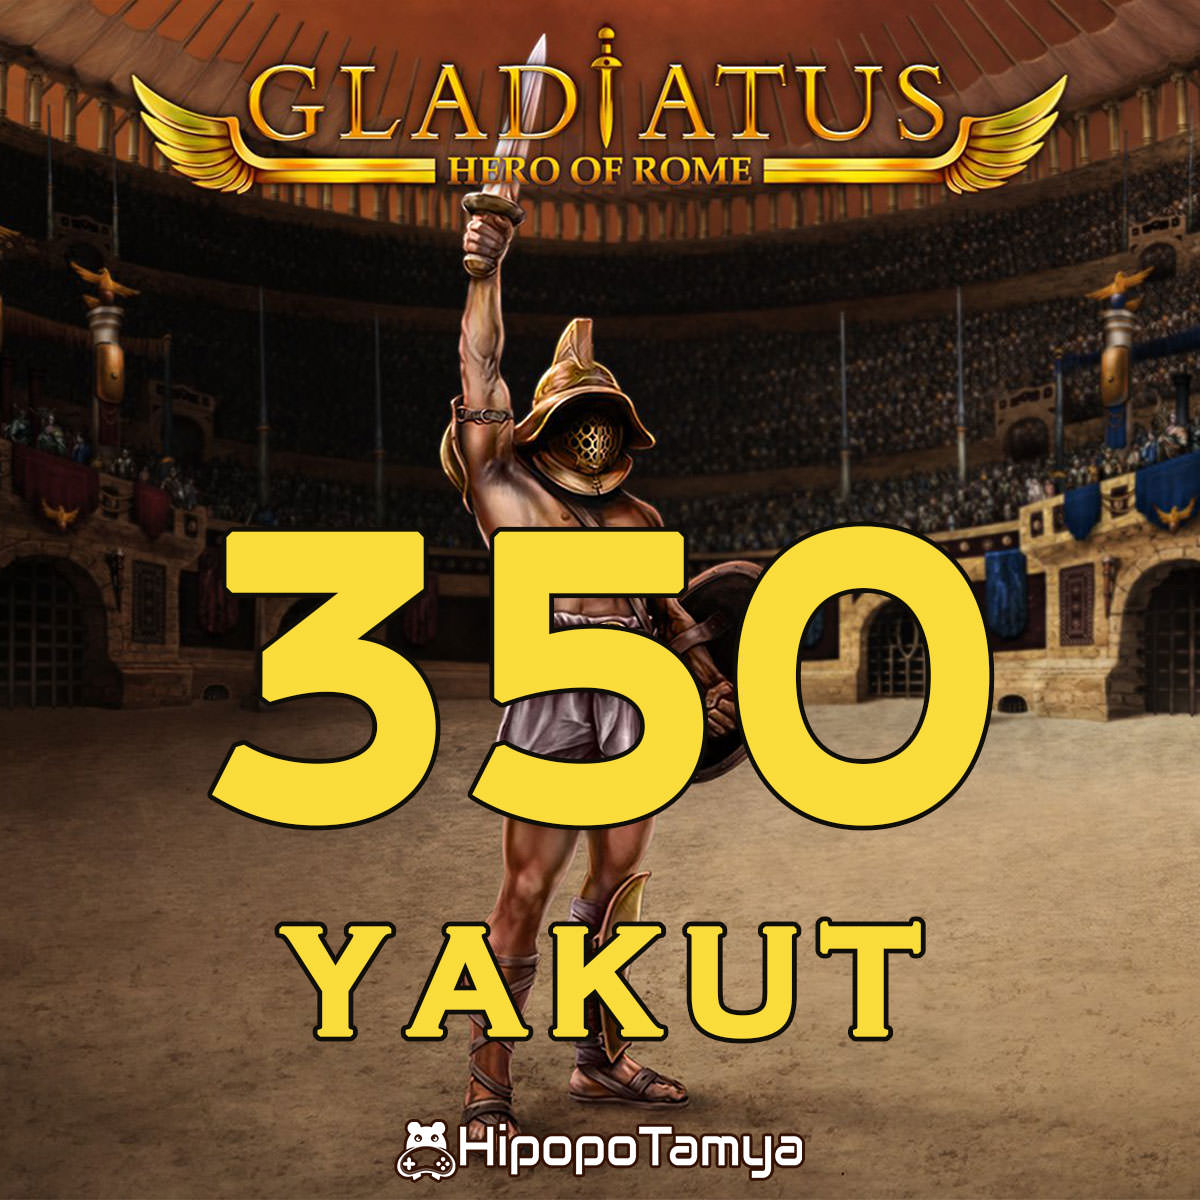 Gladiatus 350 Yakut